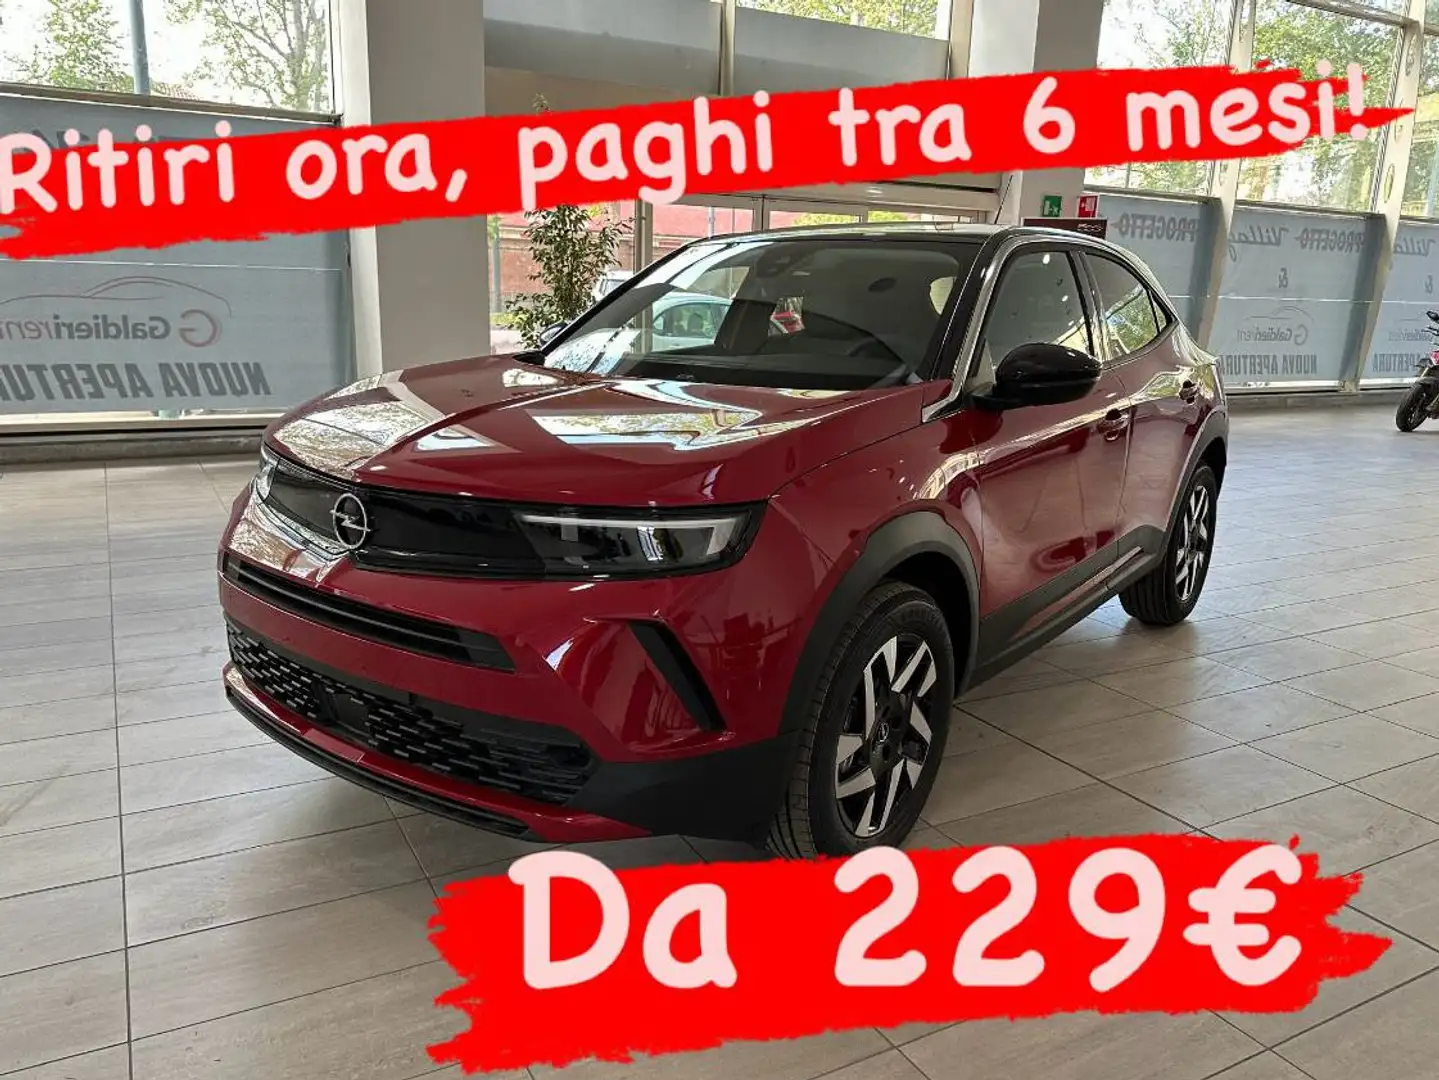 Opel Mokka DA 229€ TRA 6 MESI! crvena - 1